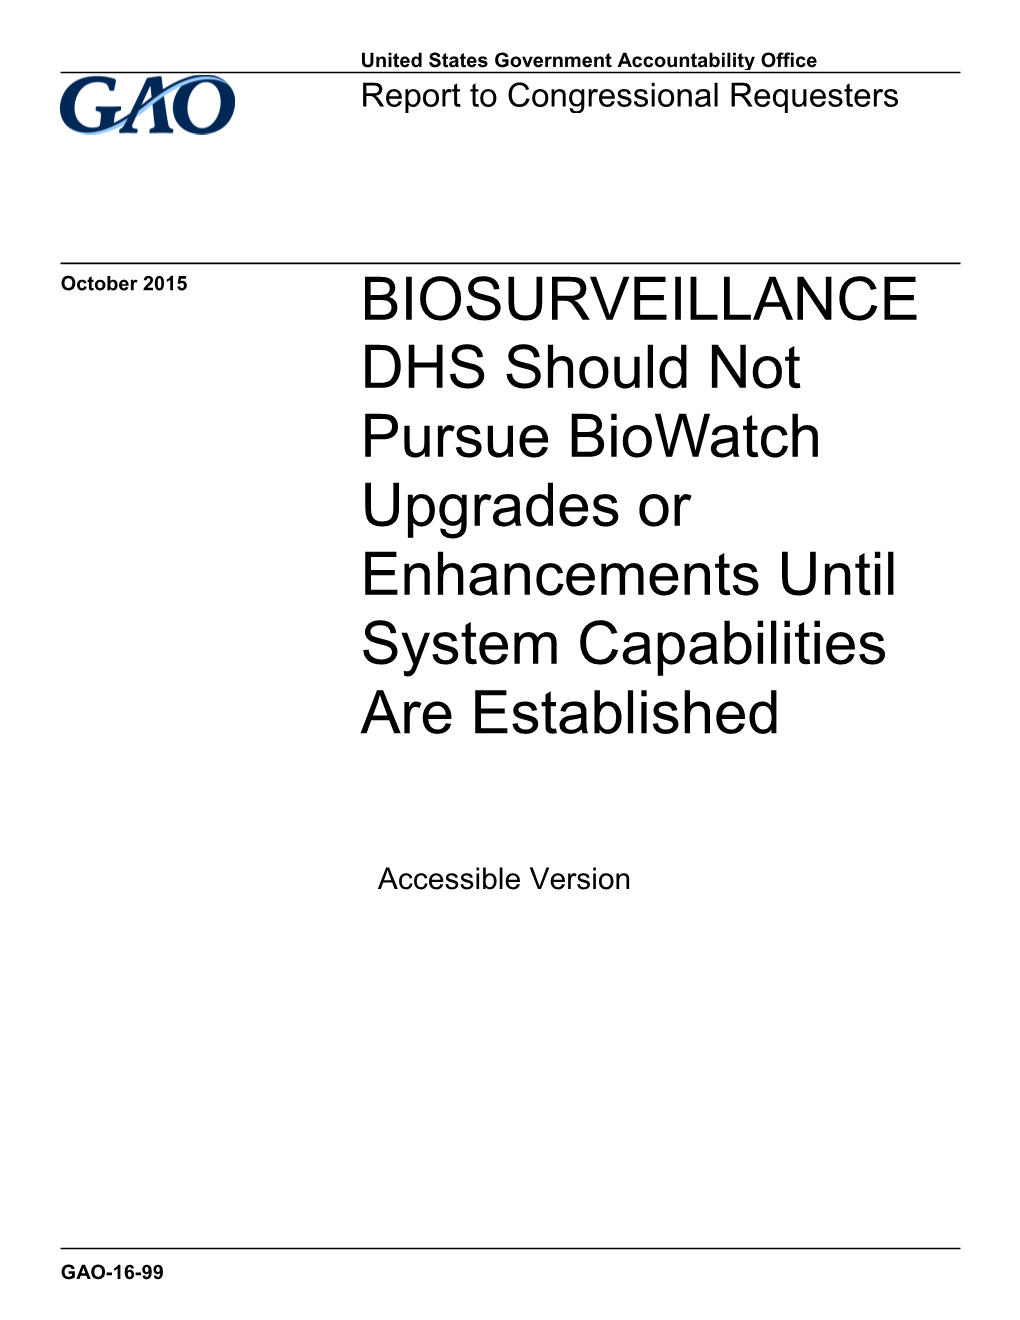 Biosurveillance, DHS Should Not Pursue Biowatch Upgrades Or